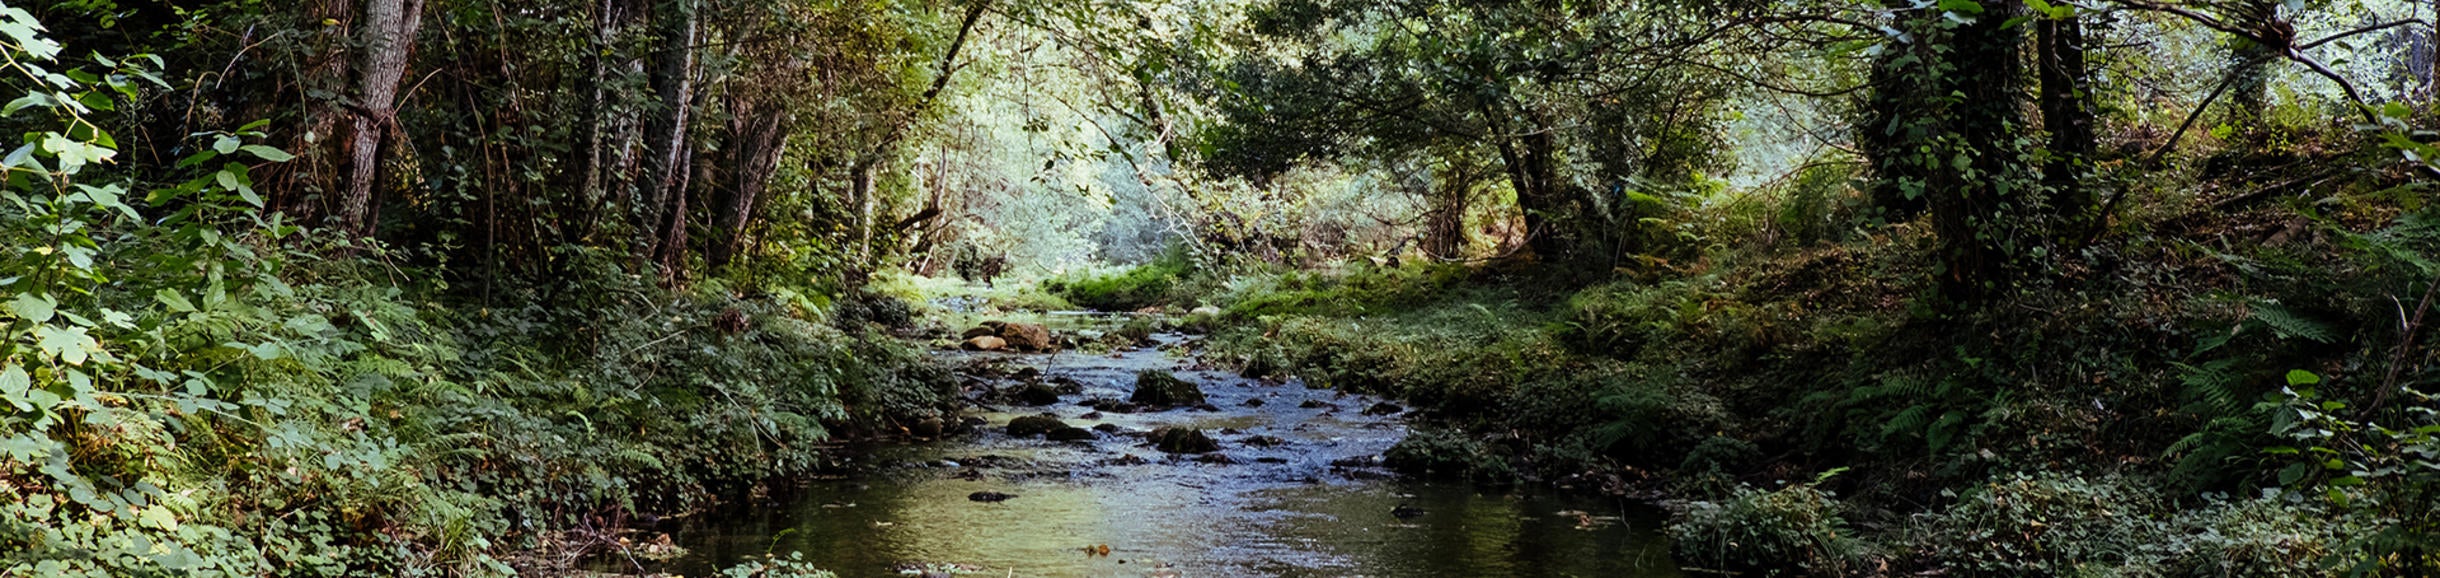 stream in a forest (c) Karim Sakhibgareev